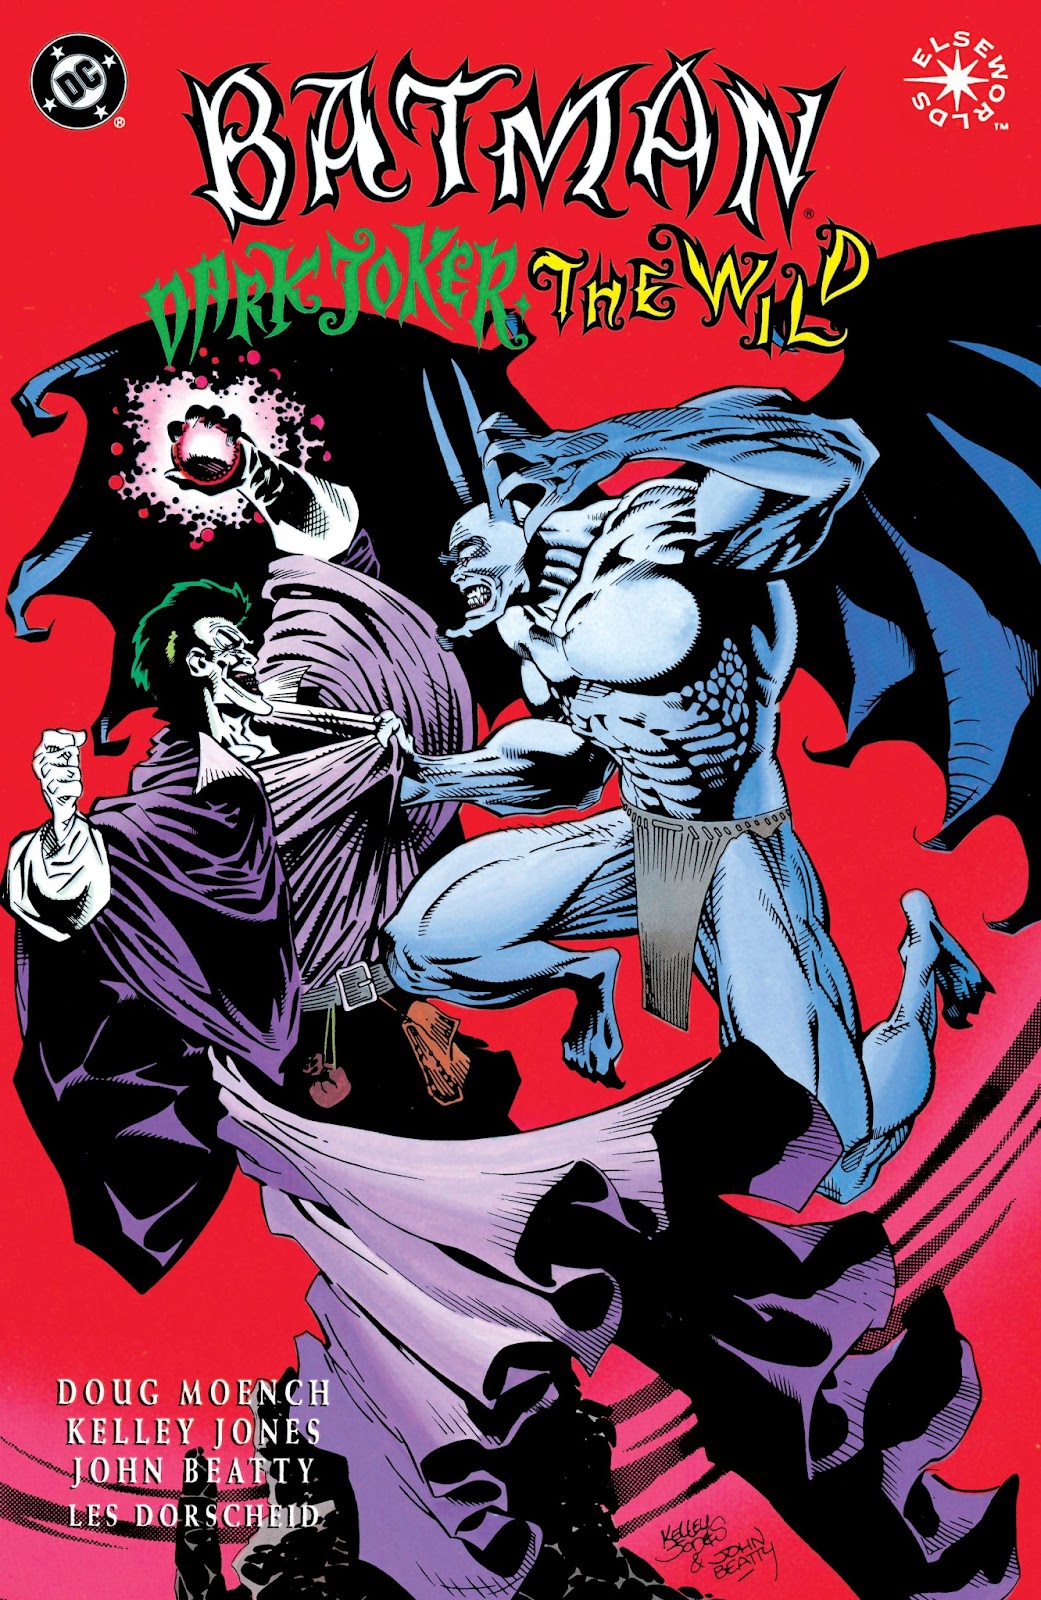 Batman: Dark Joker - The Wild issue TPB - Page 1